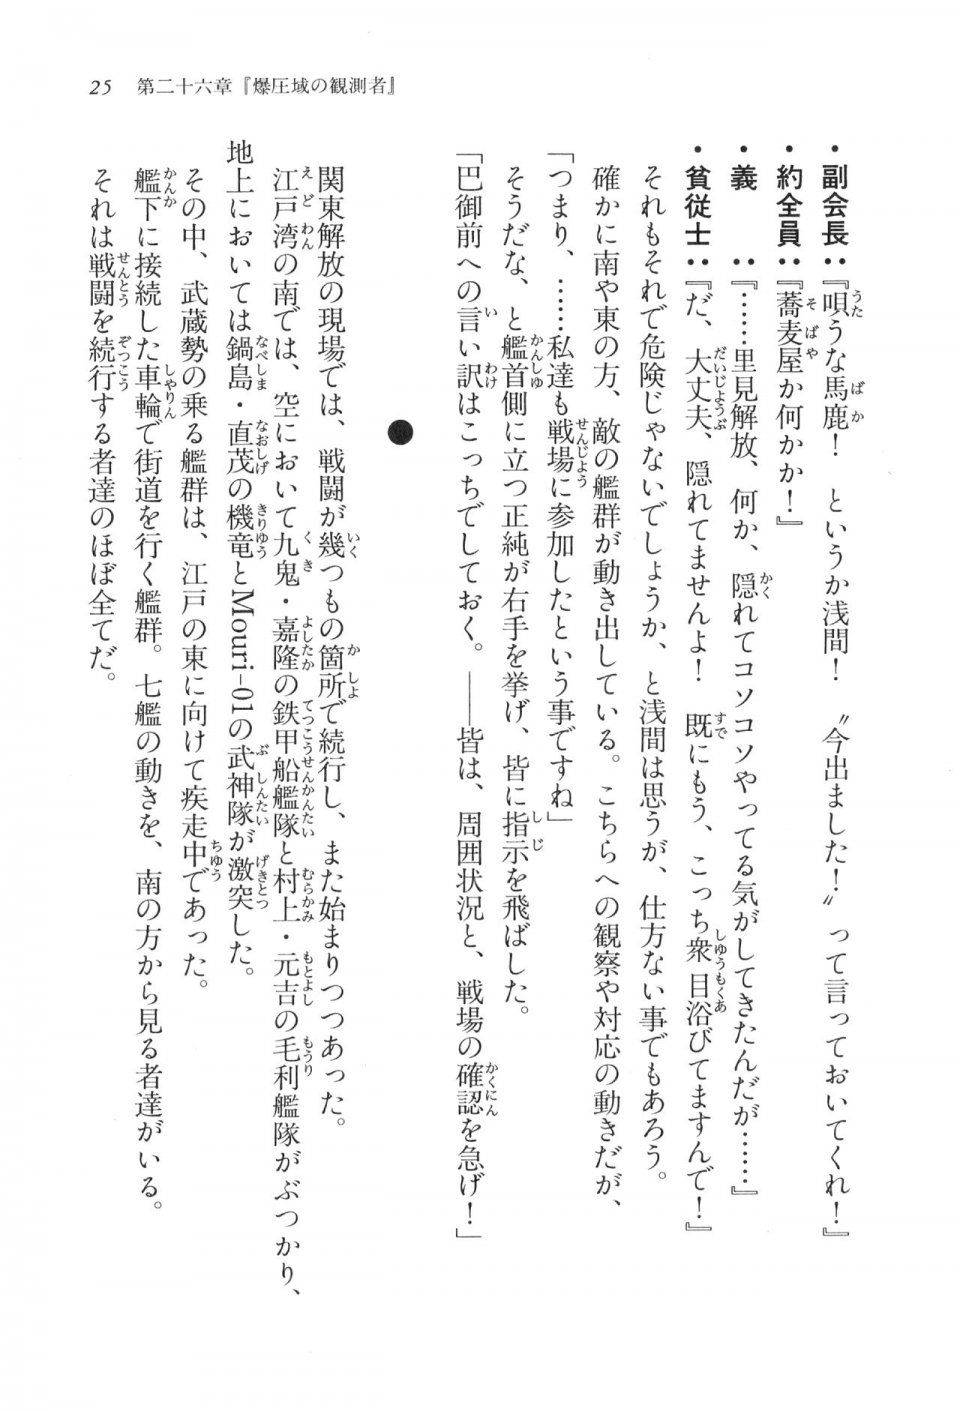 Kyoukai Senjou no Horizon LN Vol 17(7B) - Photo #25